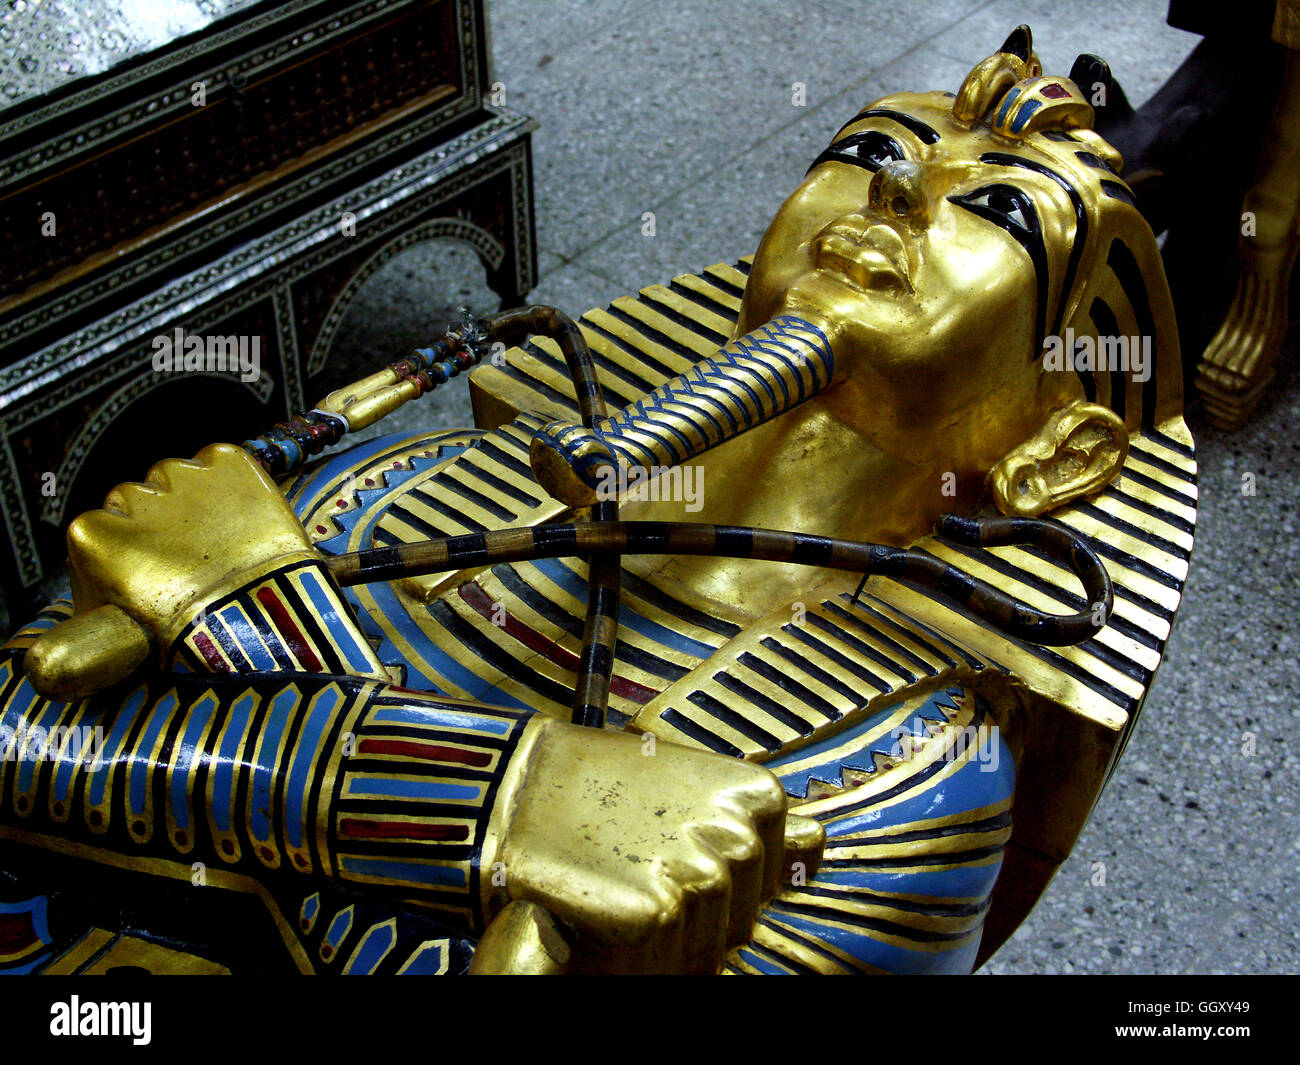 A conserver dans le quartier copte du Caire, la vente de meubles inspirée des artefacts égyptiens antiques. Cas maman de Toutankhamon. Banque D'Images